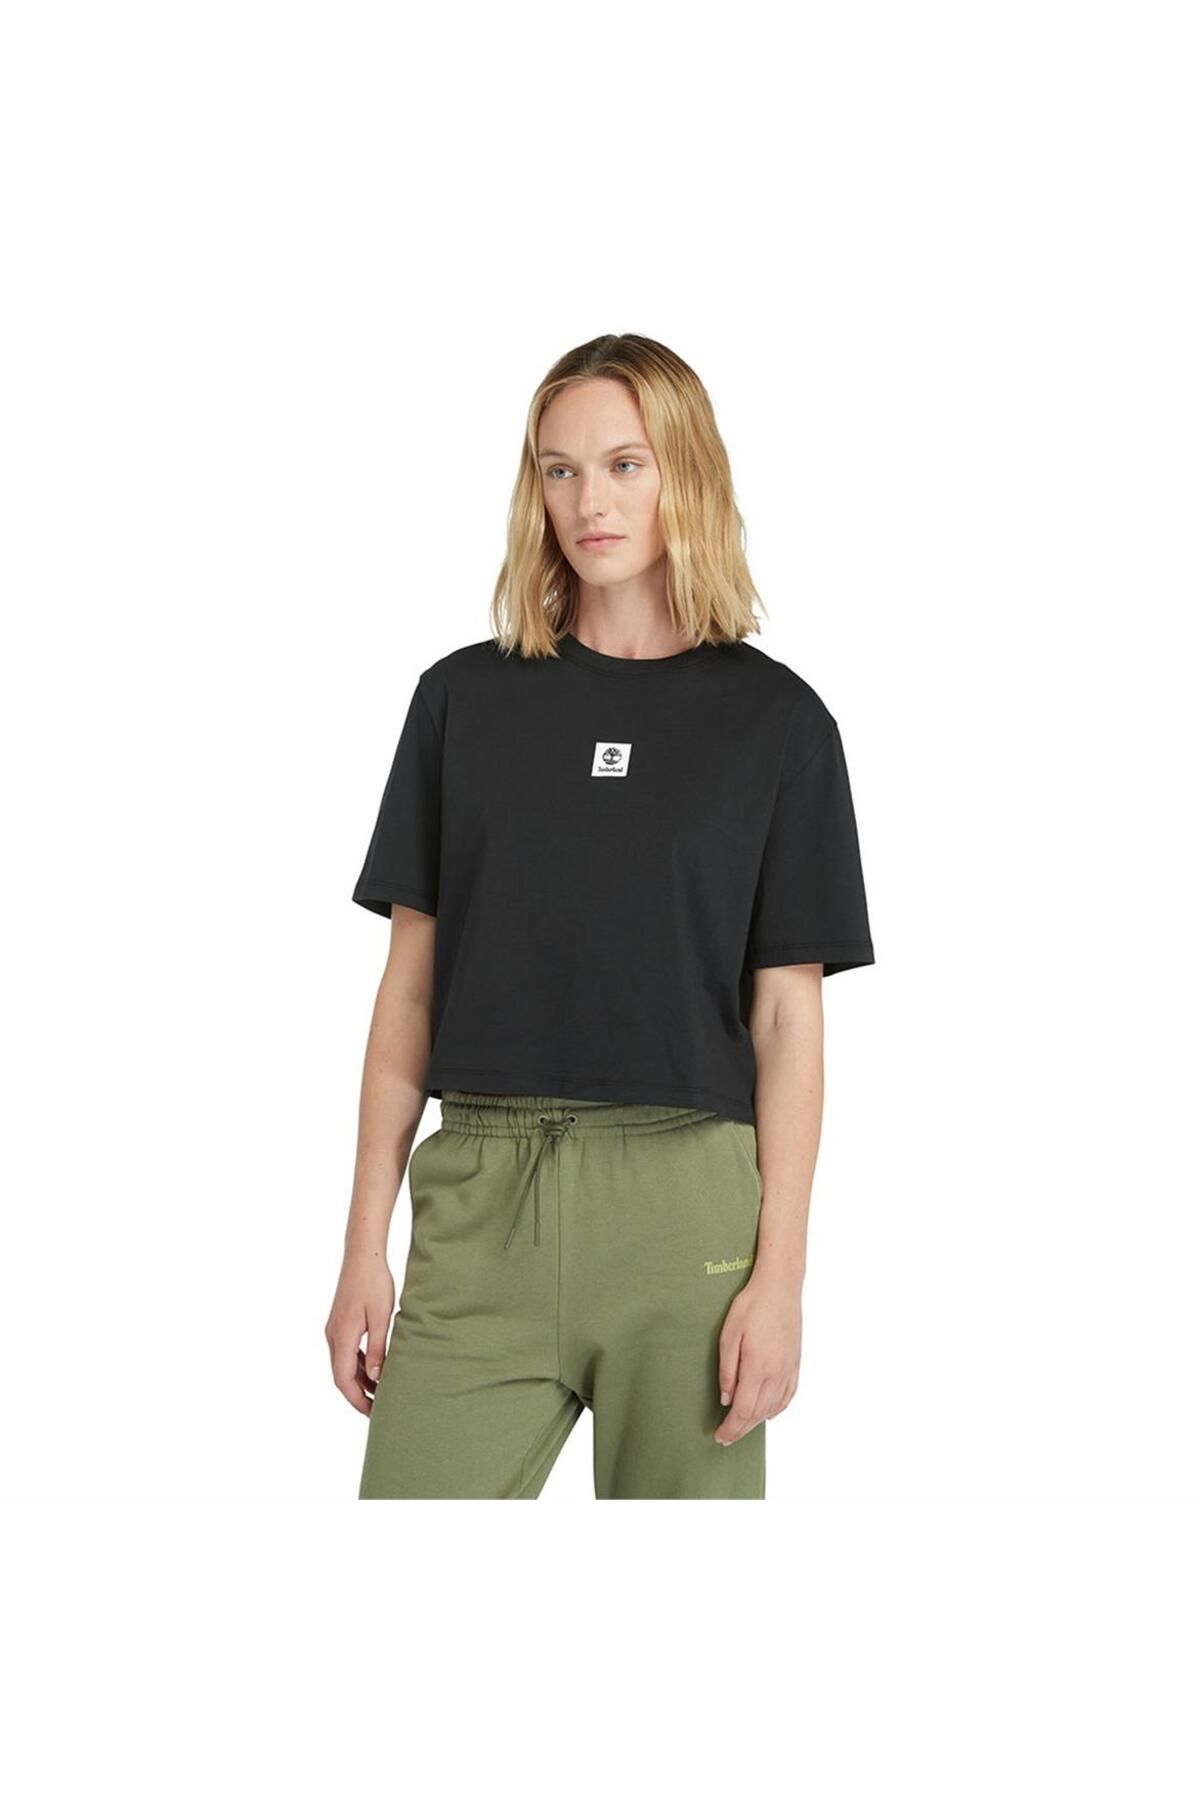 Timberland Short-sleeve Tee Siyah Kadın T-shirt